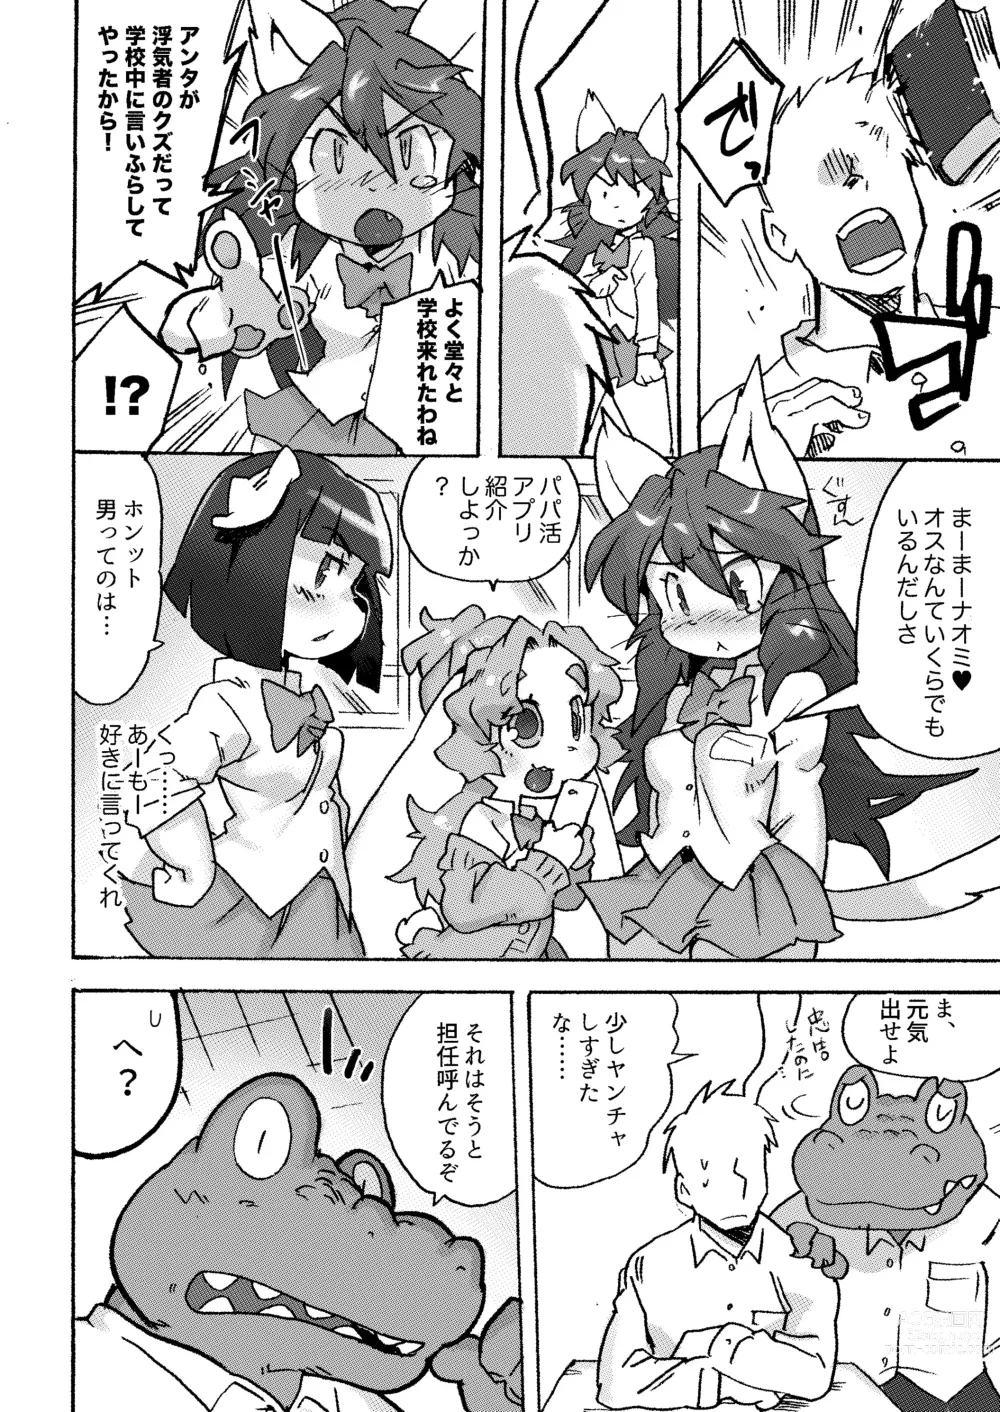 Page 63 of doujinshi Kemo Gal ni Aisarete Moto no Sekai ni Kaerenai (decensored)